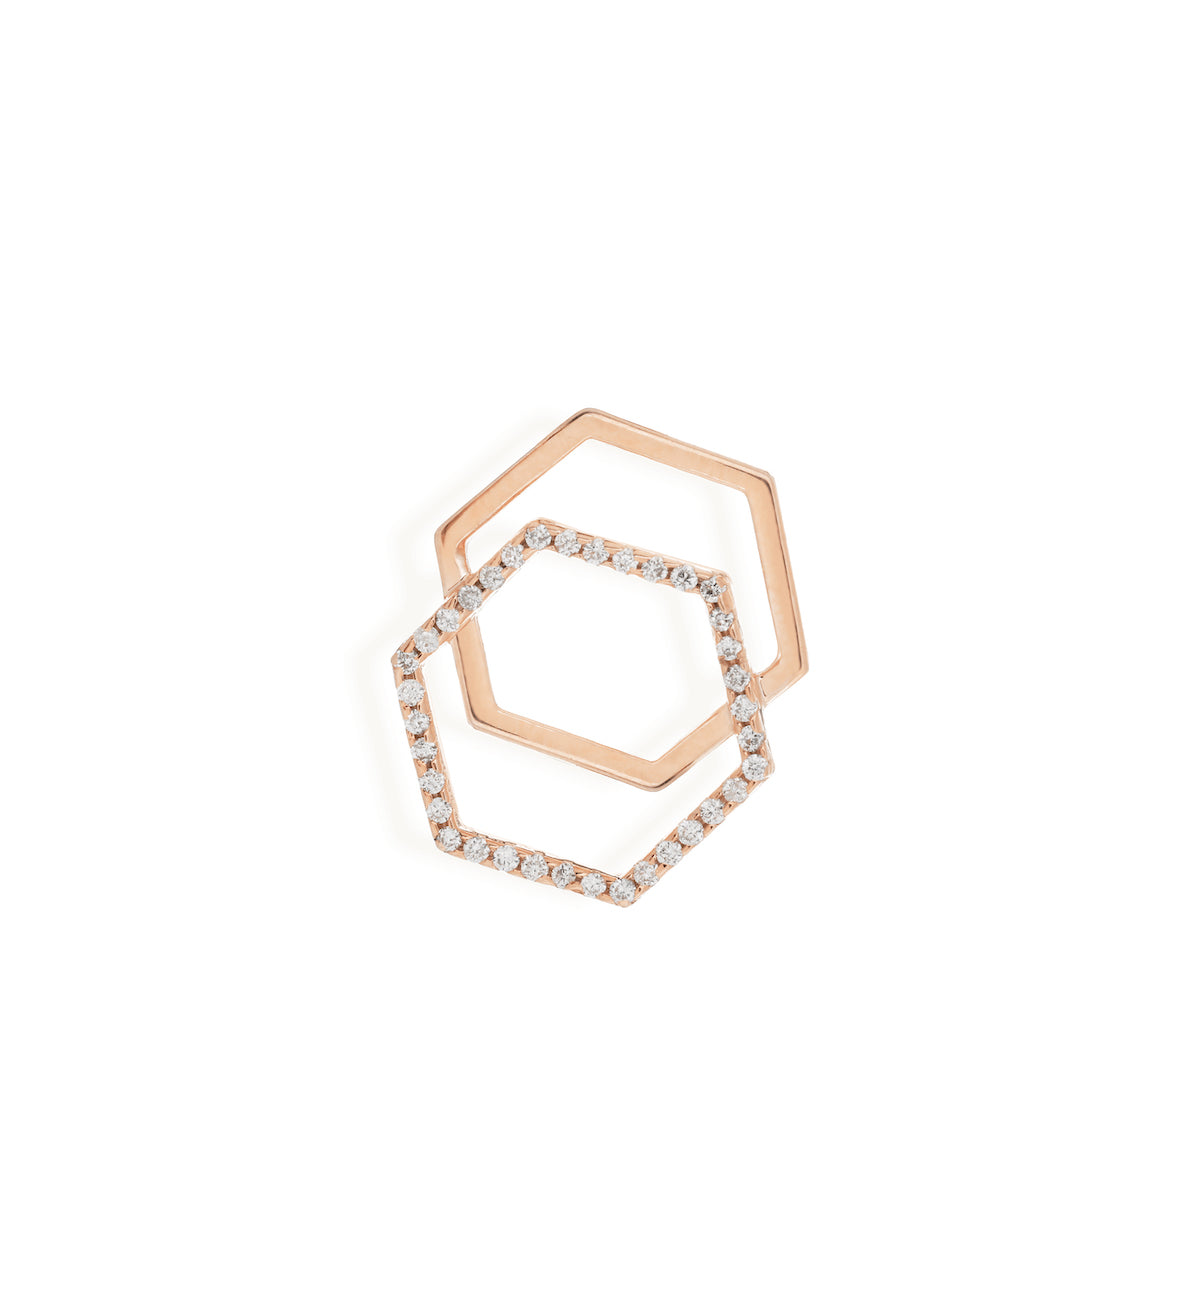 gold diamond earrings for women in rose gold colour